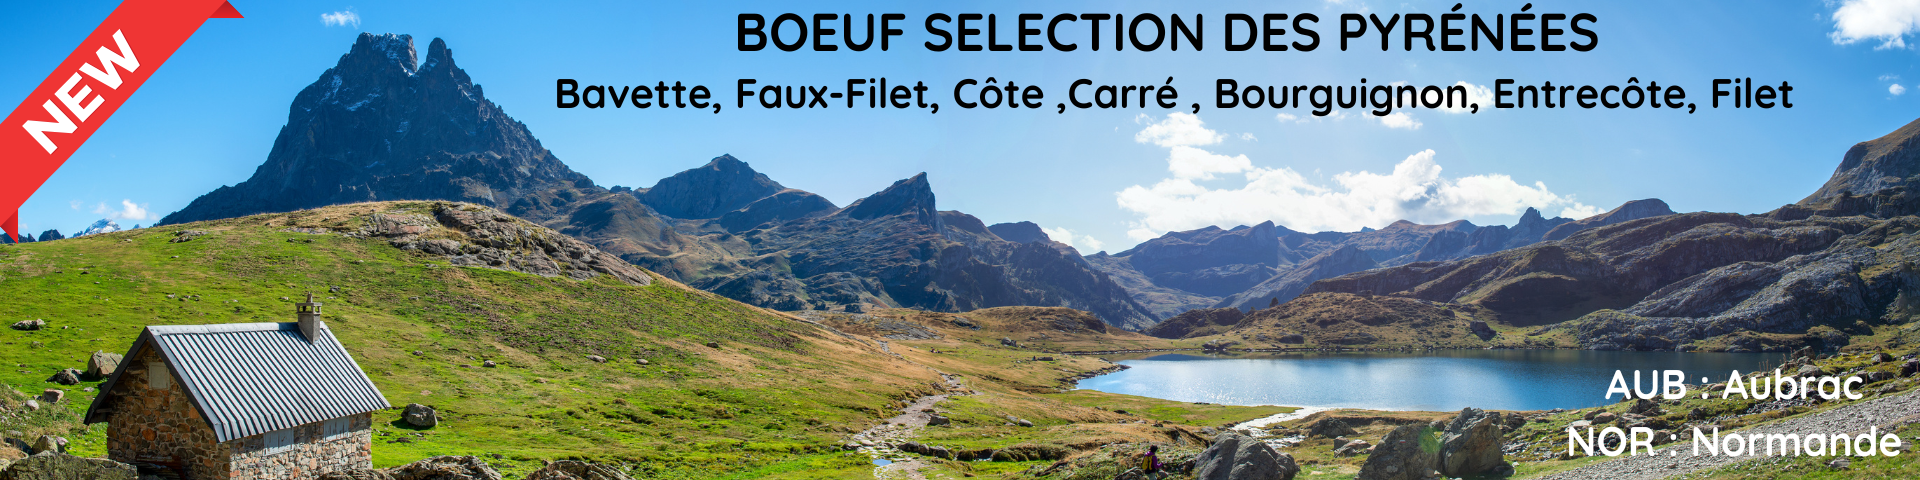 Boeuf Sélection des Pyrénées